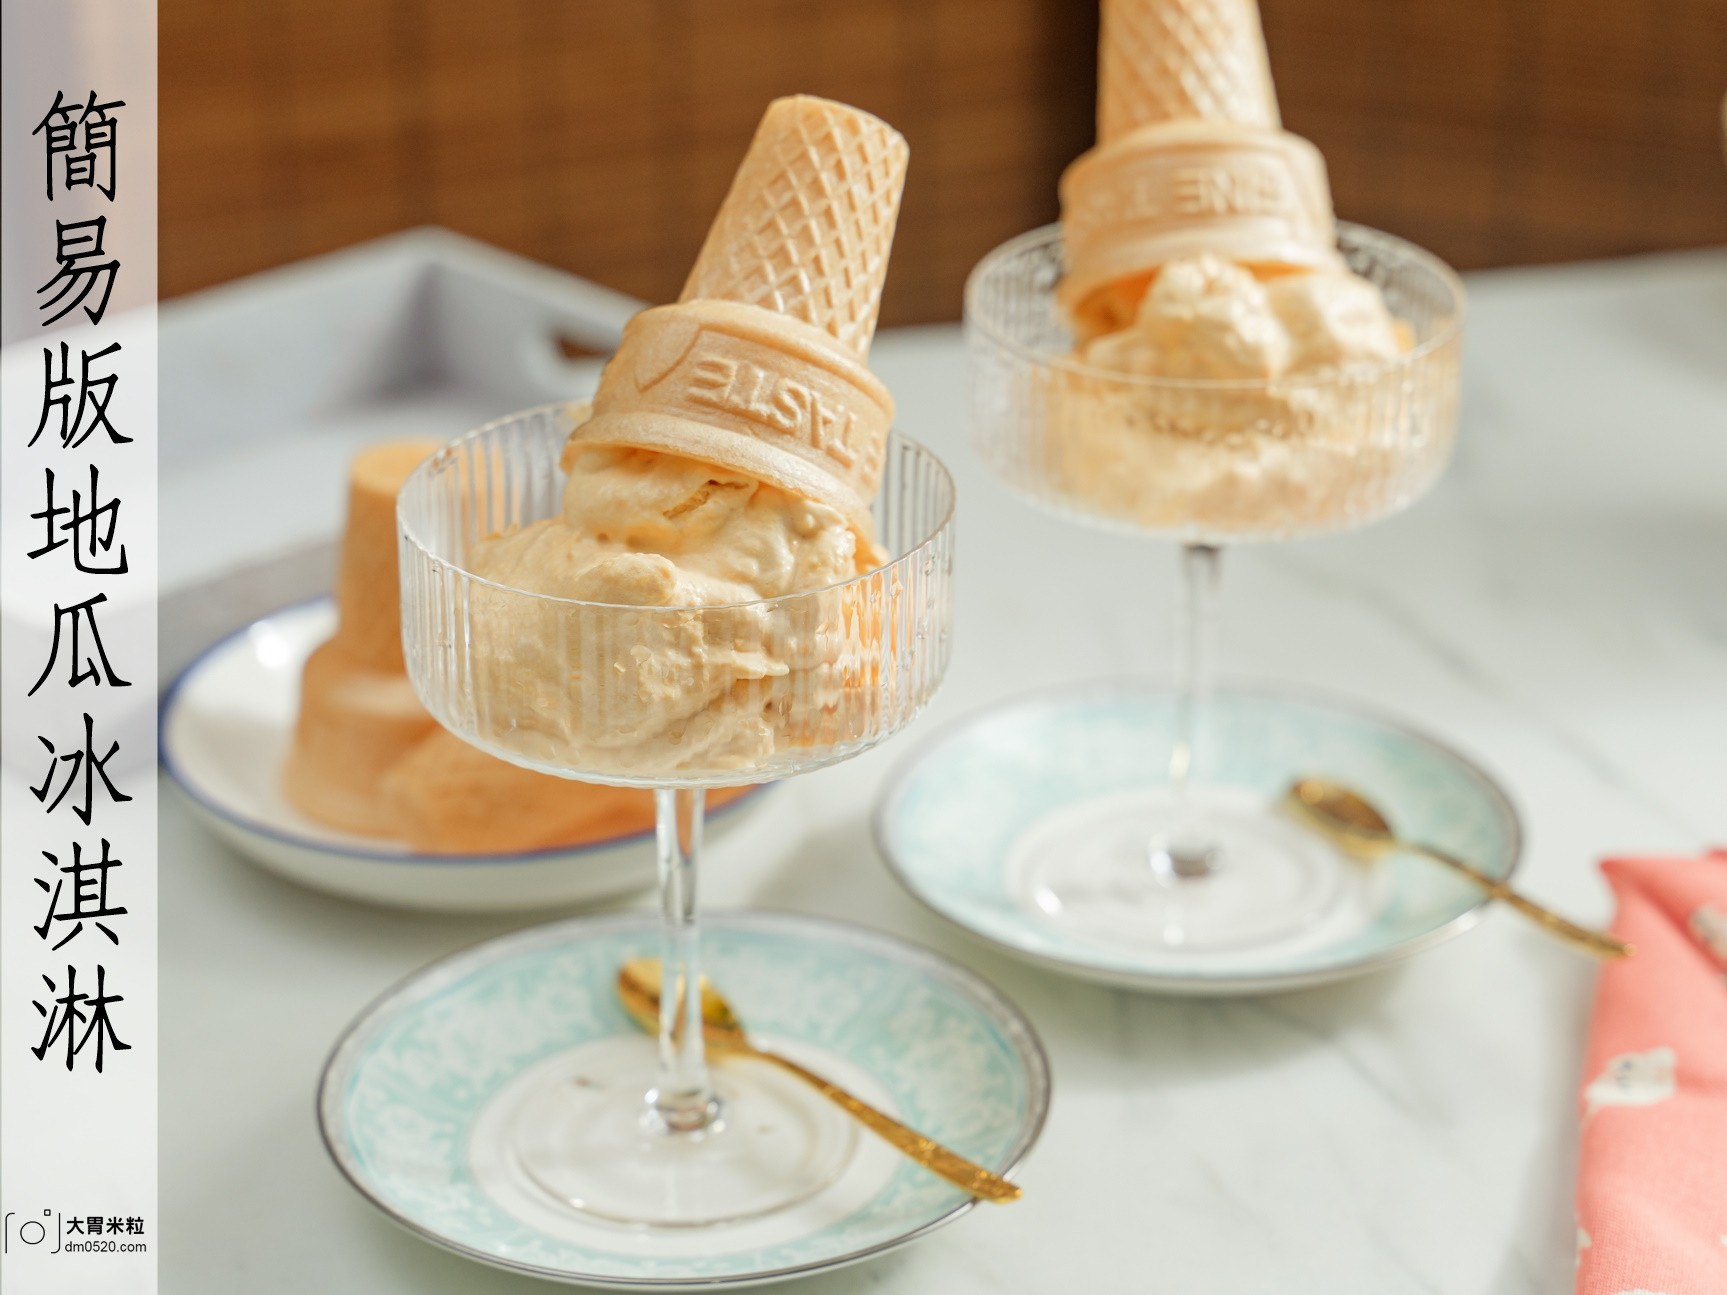 法國鮮奶油食譜-簡易版地瓜冰淇淋